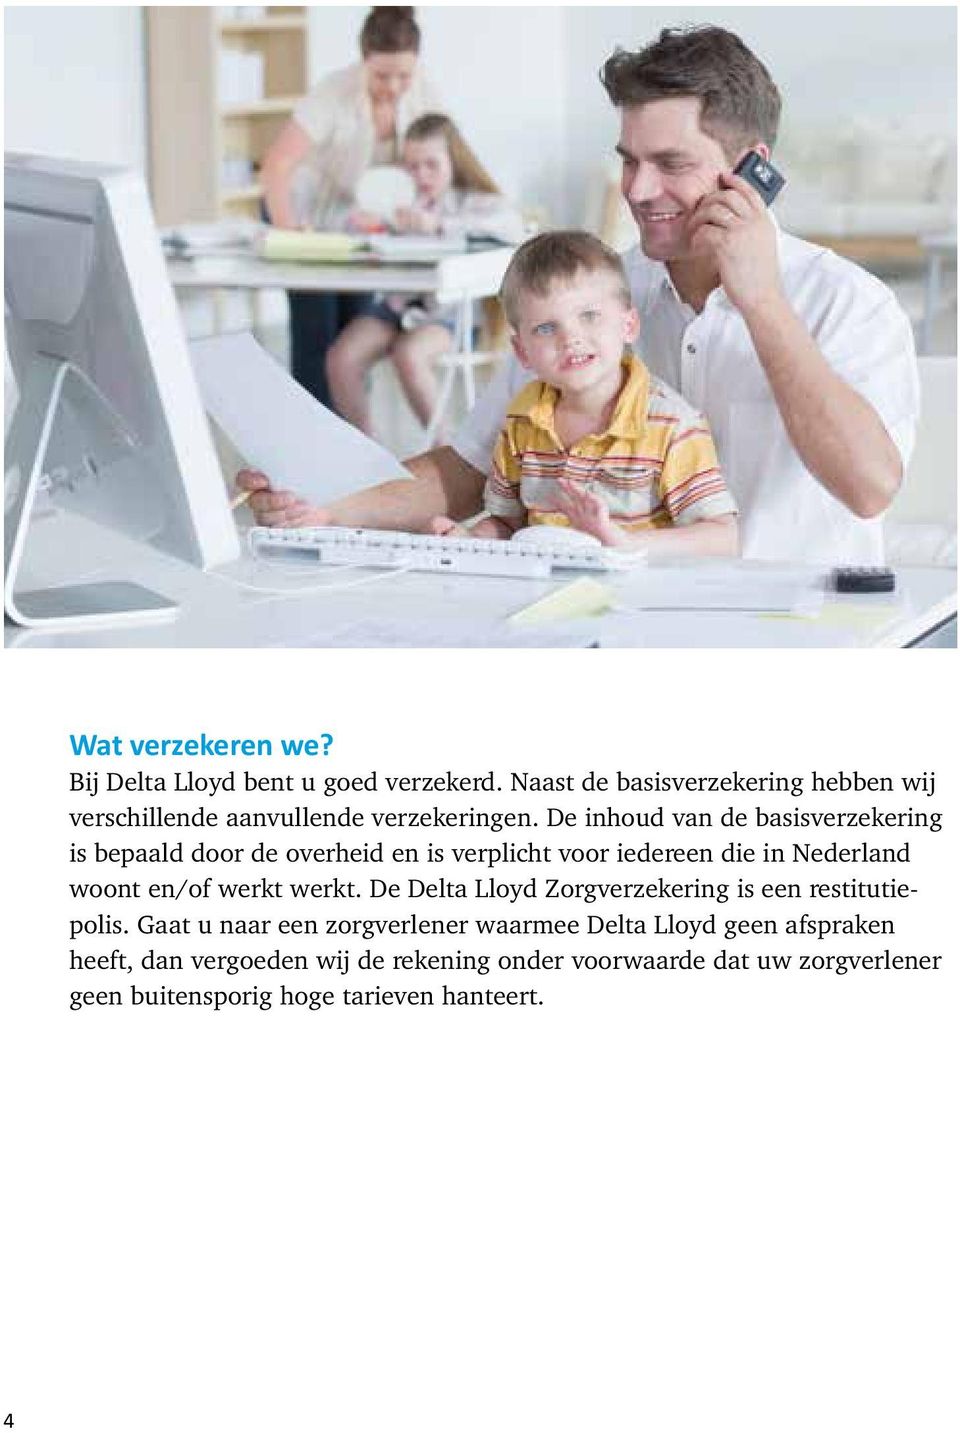 De inhoud van de basisverzekering is bepaald door de overheid en is verplicht voor iedereen die in Nederland woont en/of werkt